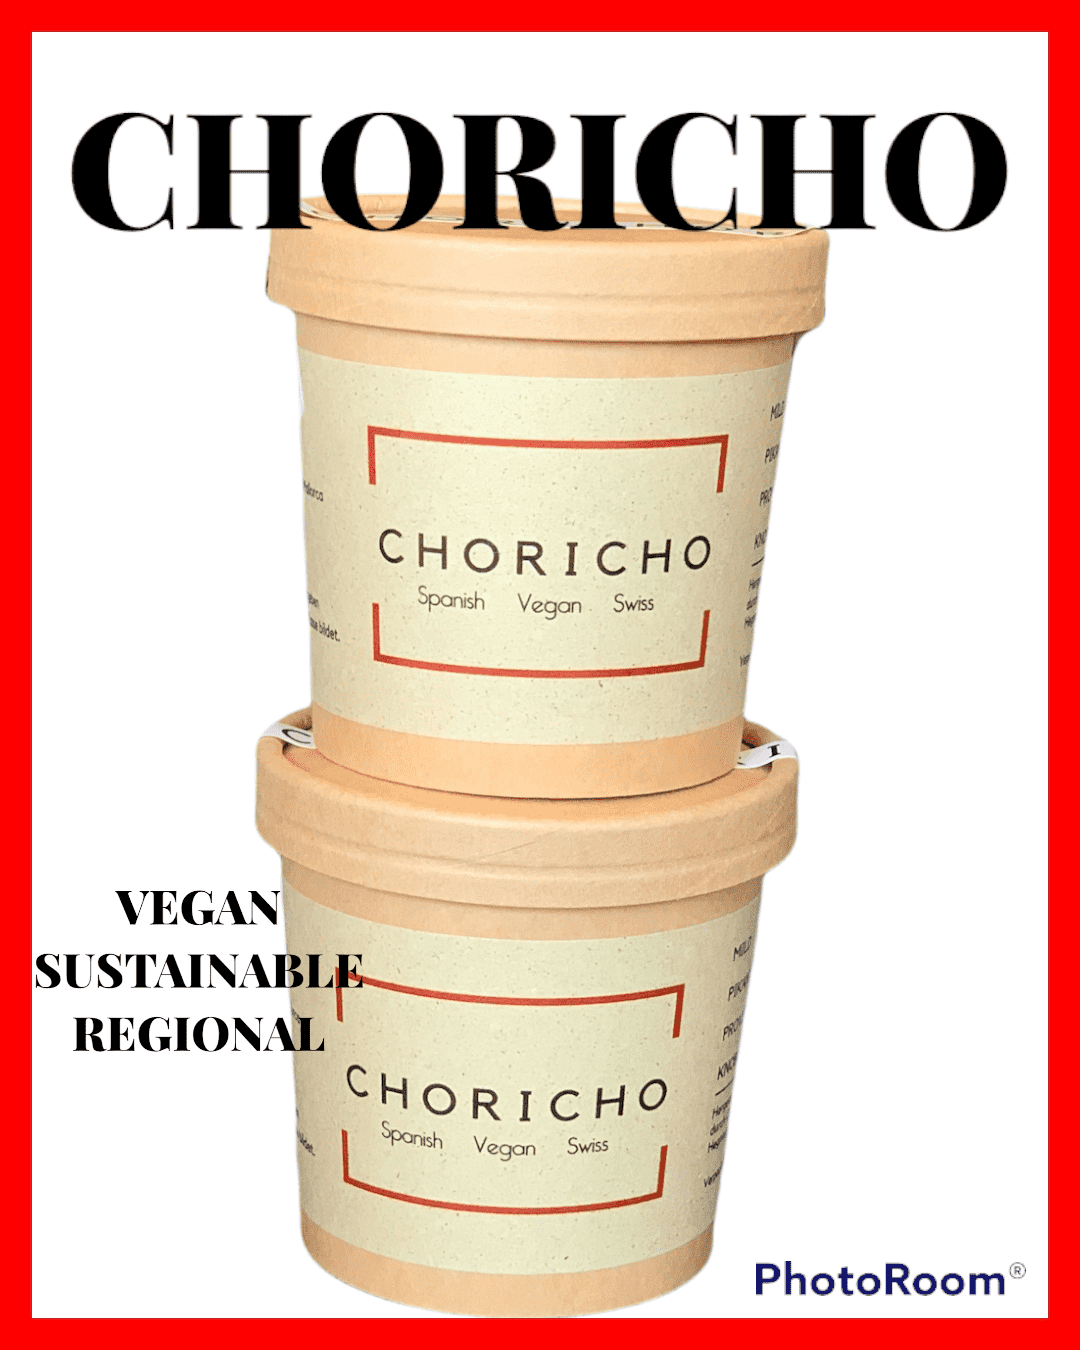 Choricho ist ein nachhaltiges, veganes und plastikfreies Produkt.